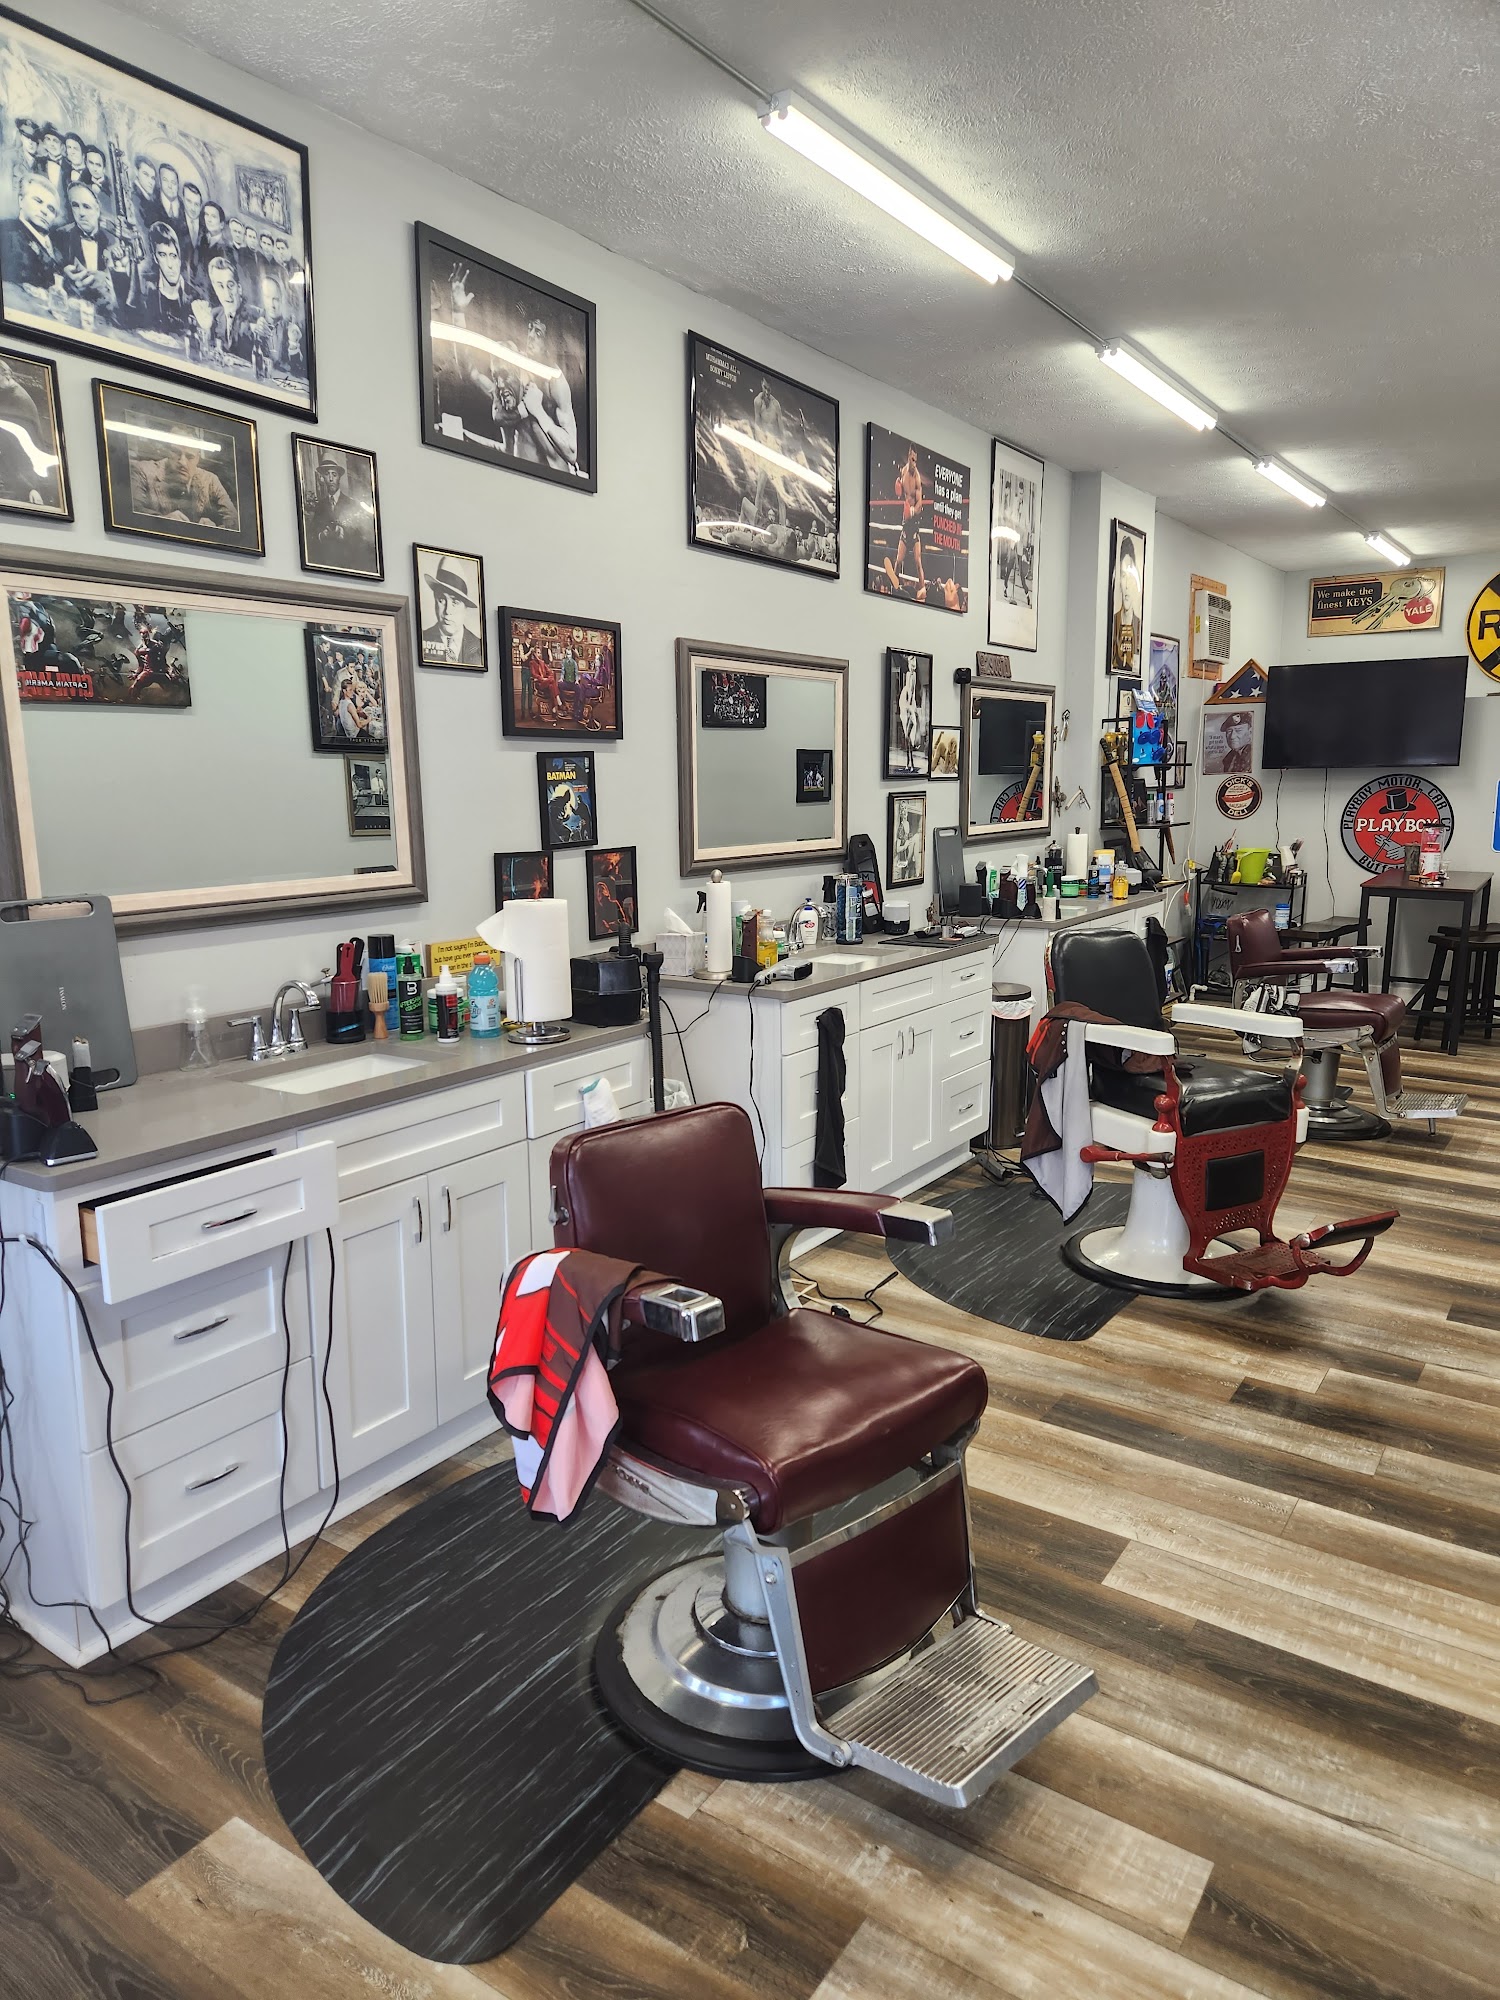 Jim's Barber Shop 7771 Lakeshore Blvd, Mentor-On-The-Lake Ohio 44060